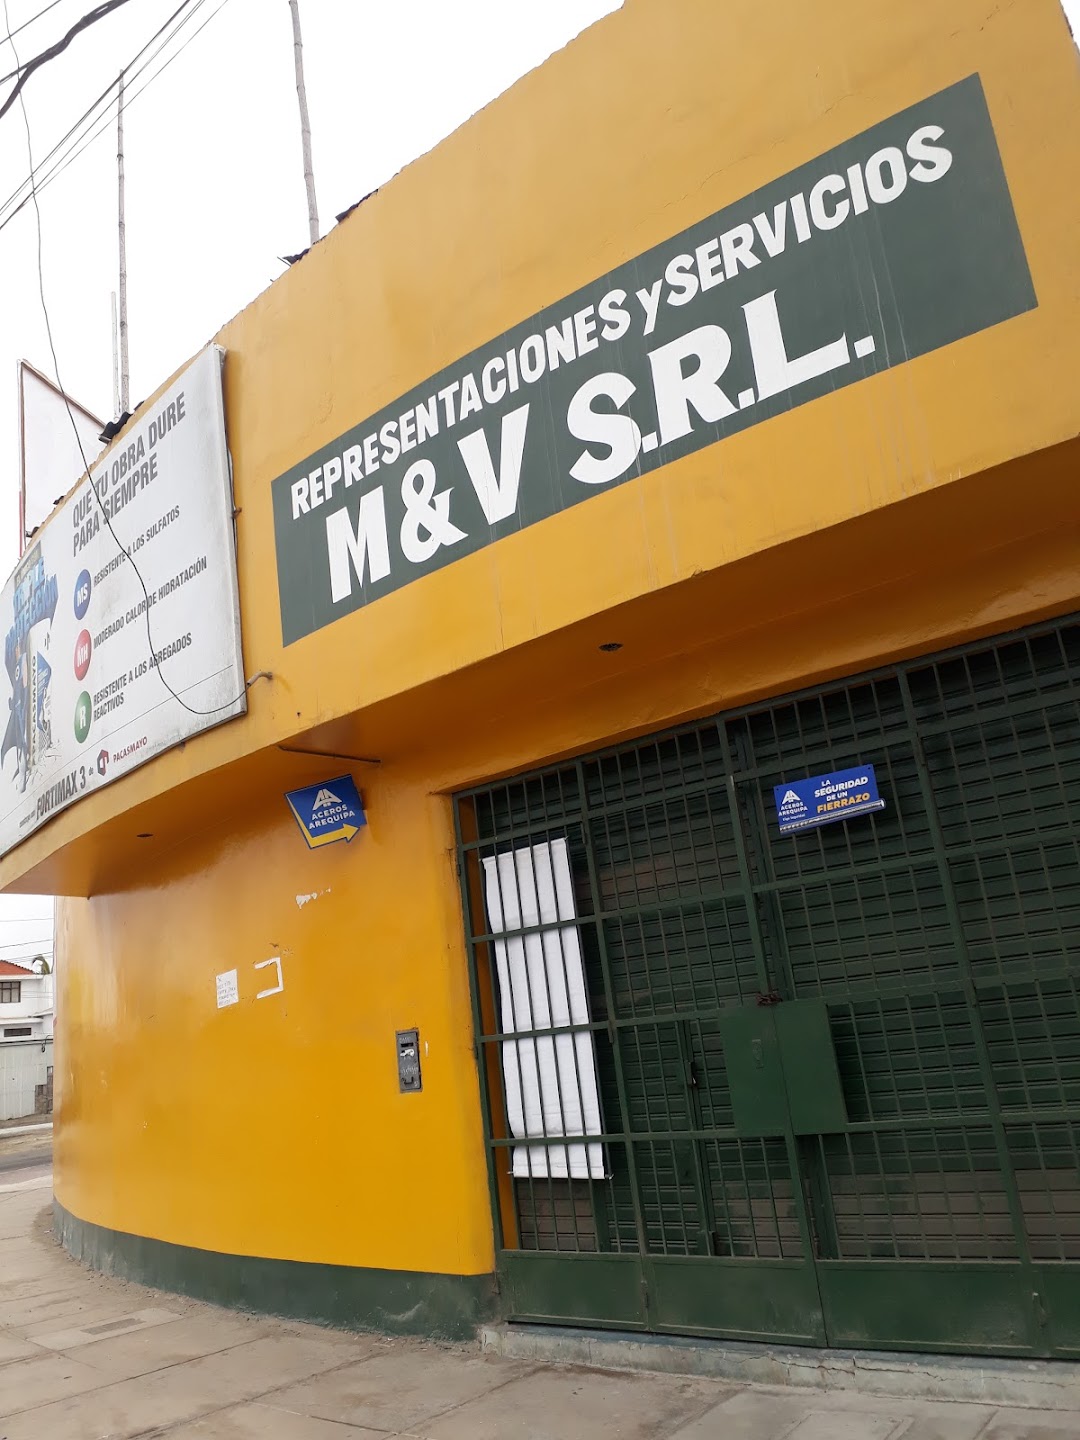 REPRESENTACIONES Y SERVICIOS M&V S.R.L.